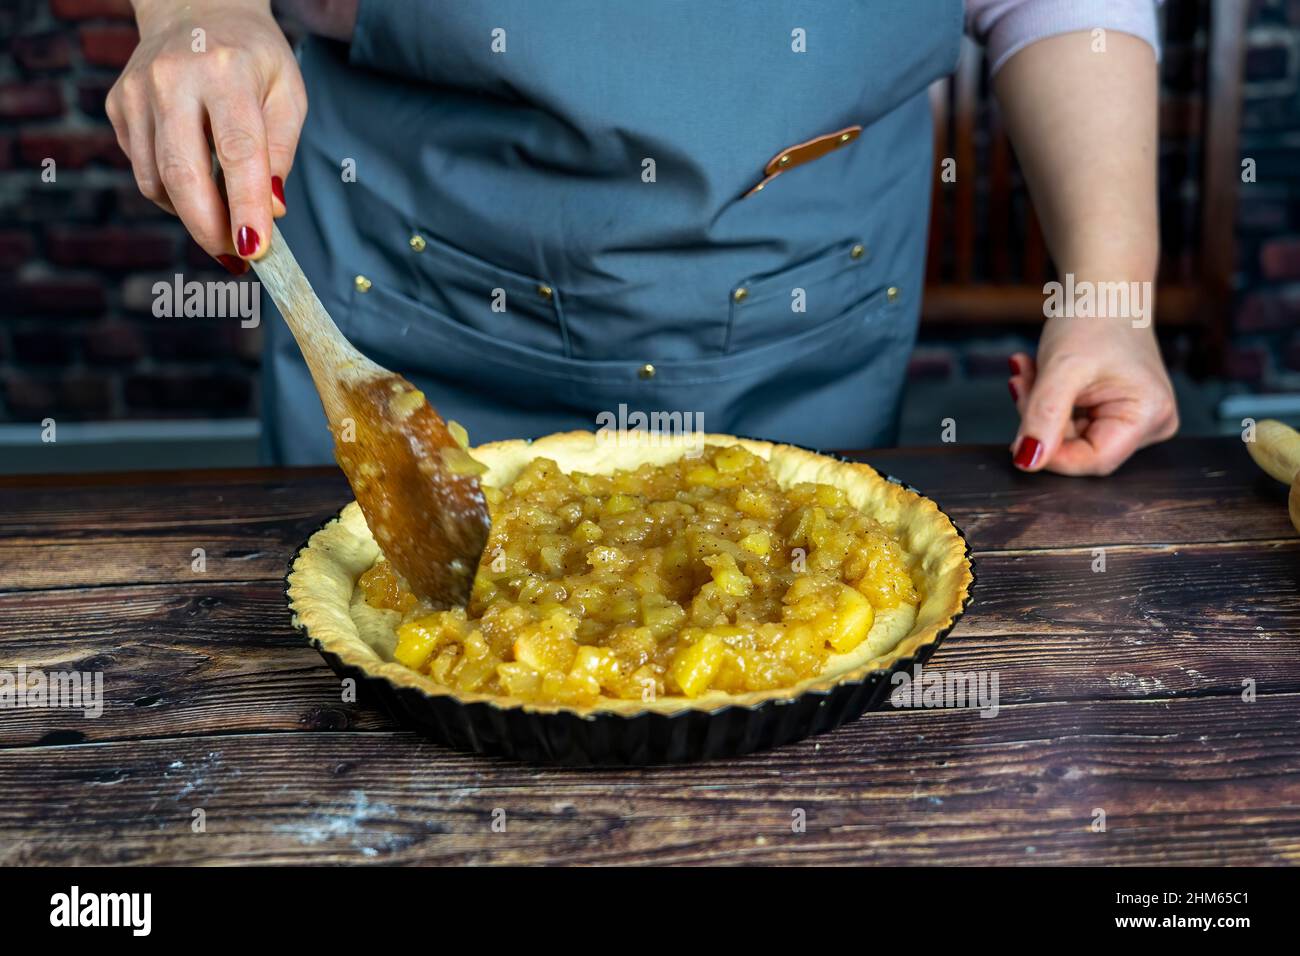 Femmes préparant une tarte aux pommes délicieuse ou une grande tarte sur fond de table en bois.Spredding la pomme confite cuite sur la pâte Banque D'Images